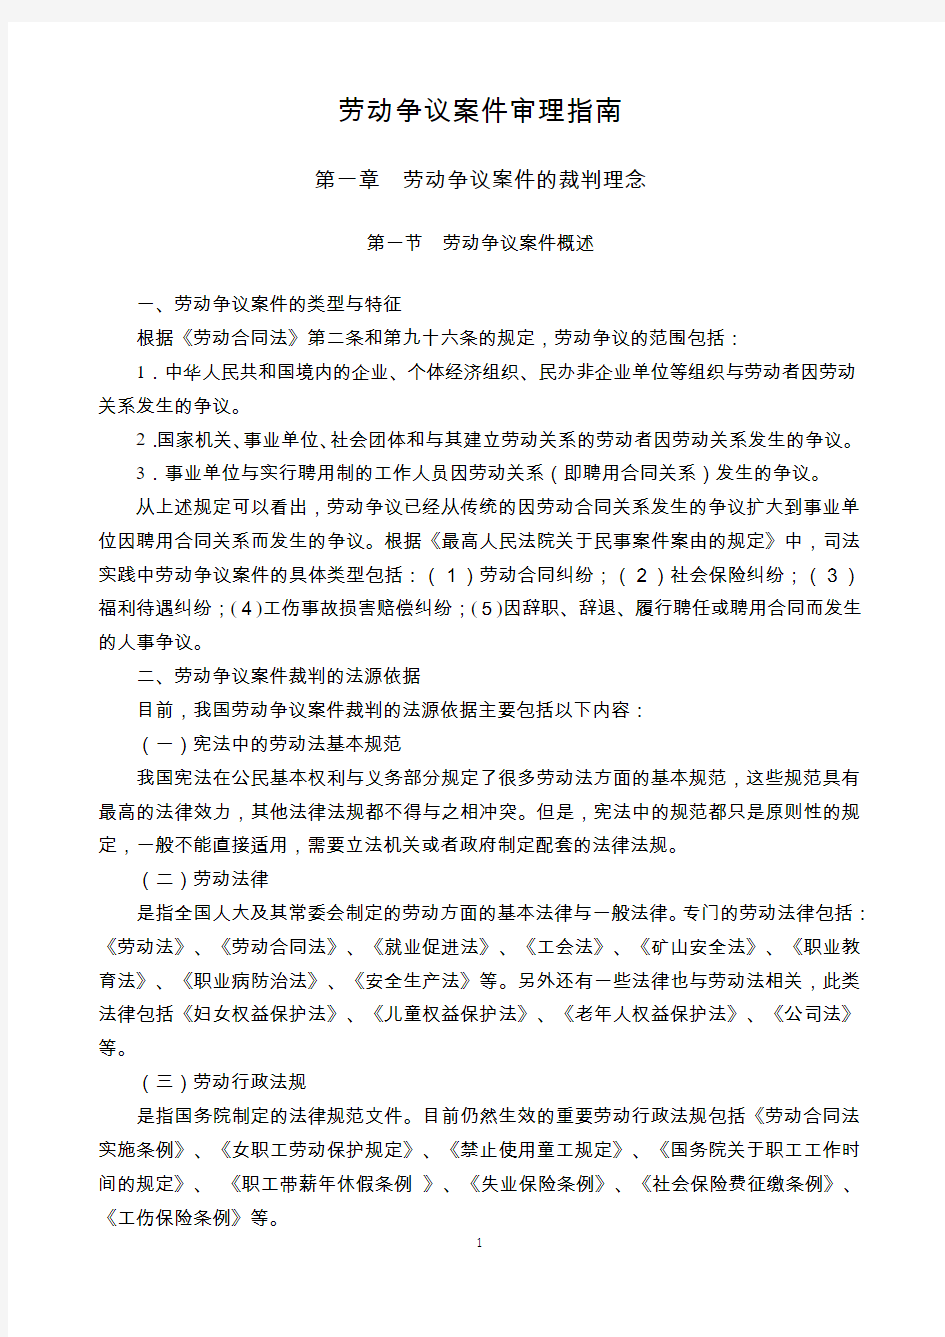 江苏省高级人民法院《劳动争议案件审理指南2012》